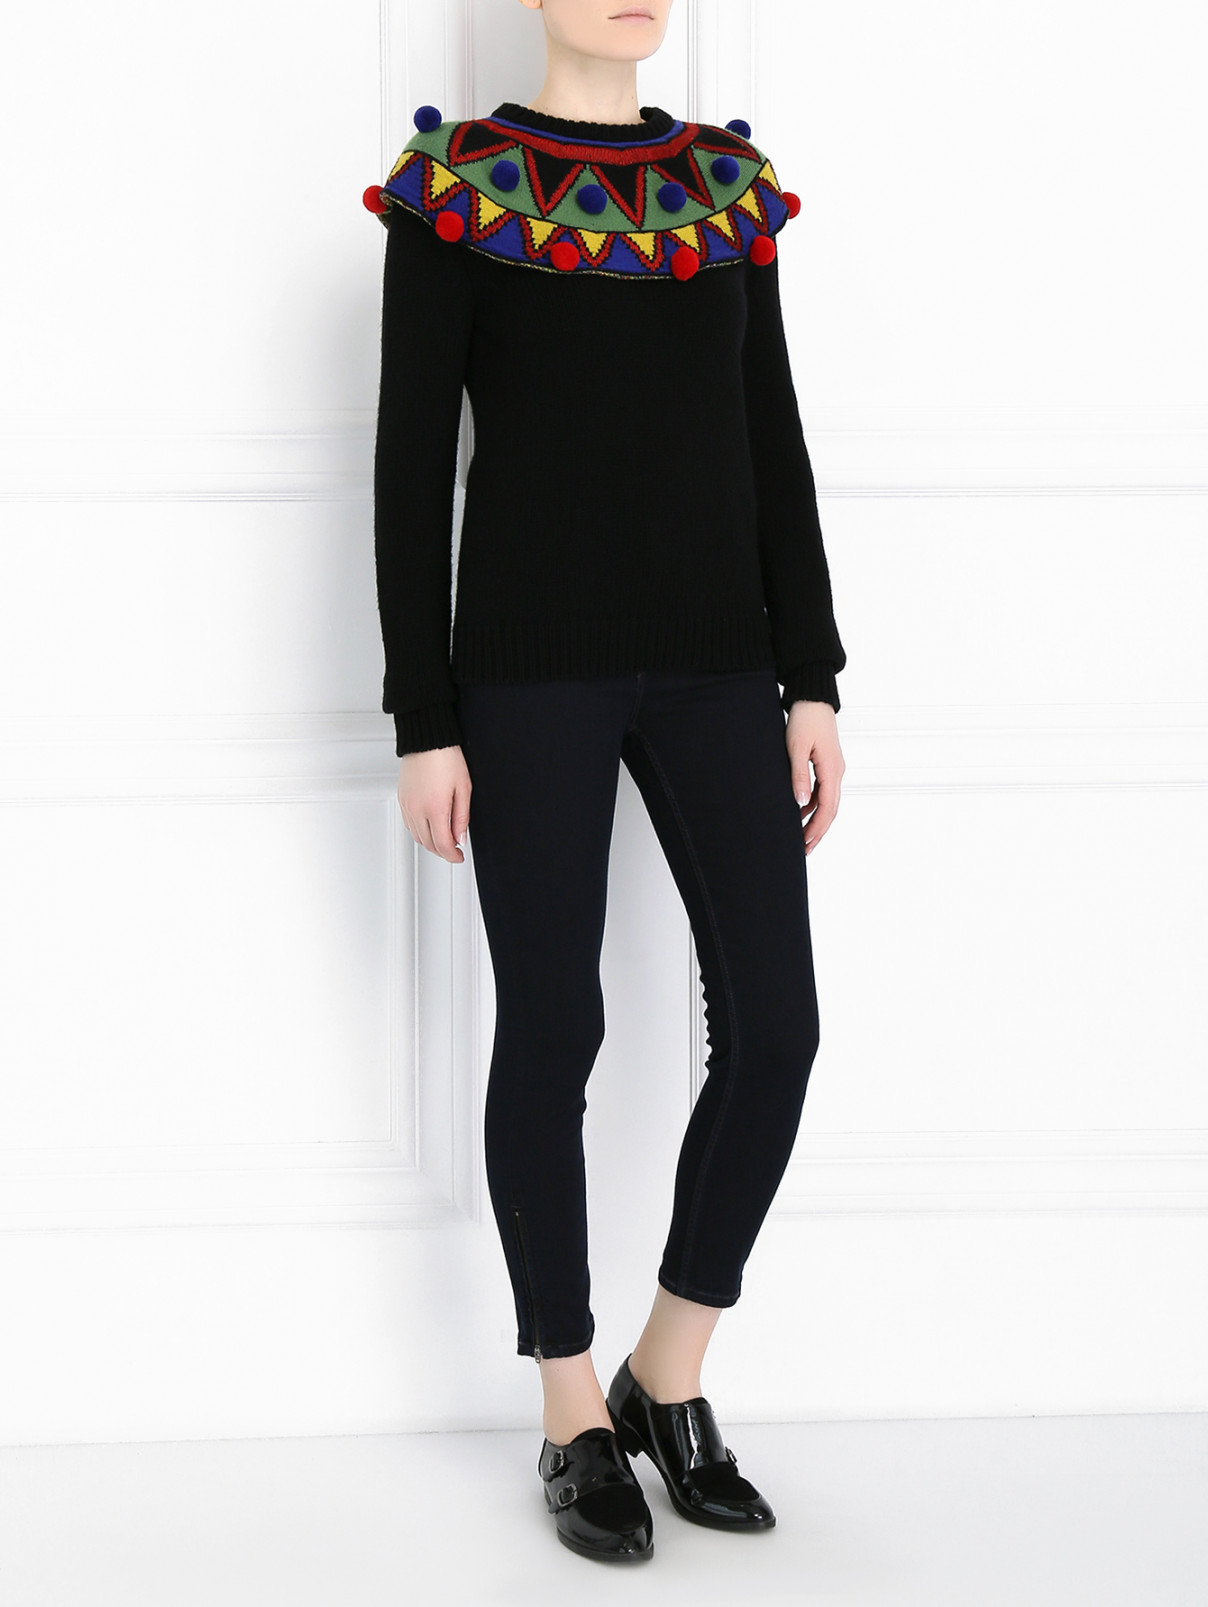 Джемпер из шерсти и кашемира с контрастным декором Stella Jean  –  Модель Общий вид  – Цвет:  Черный